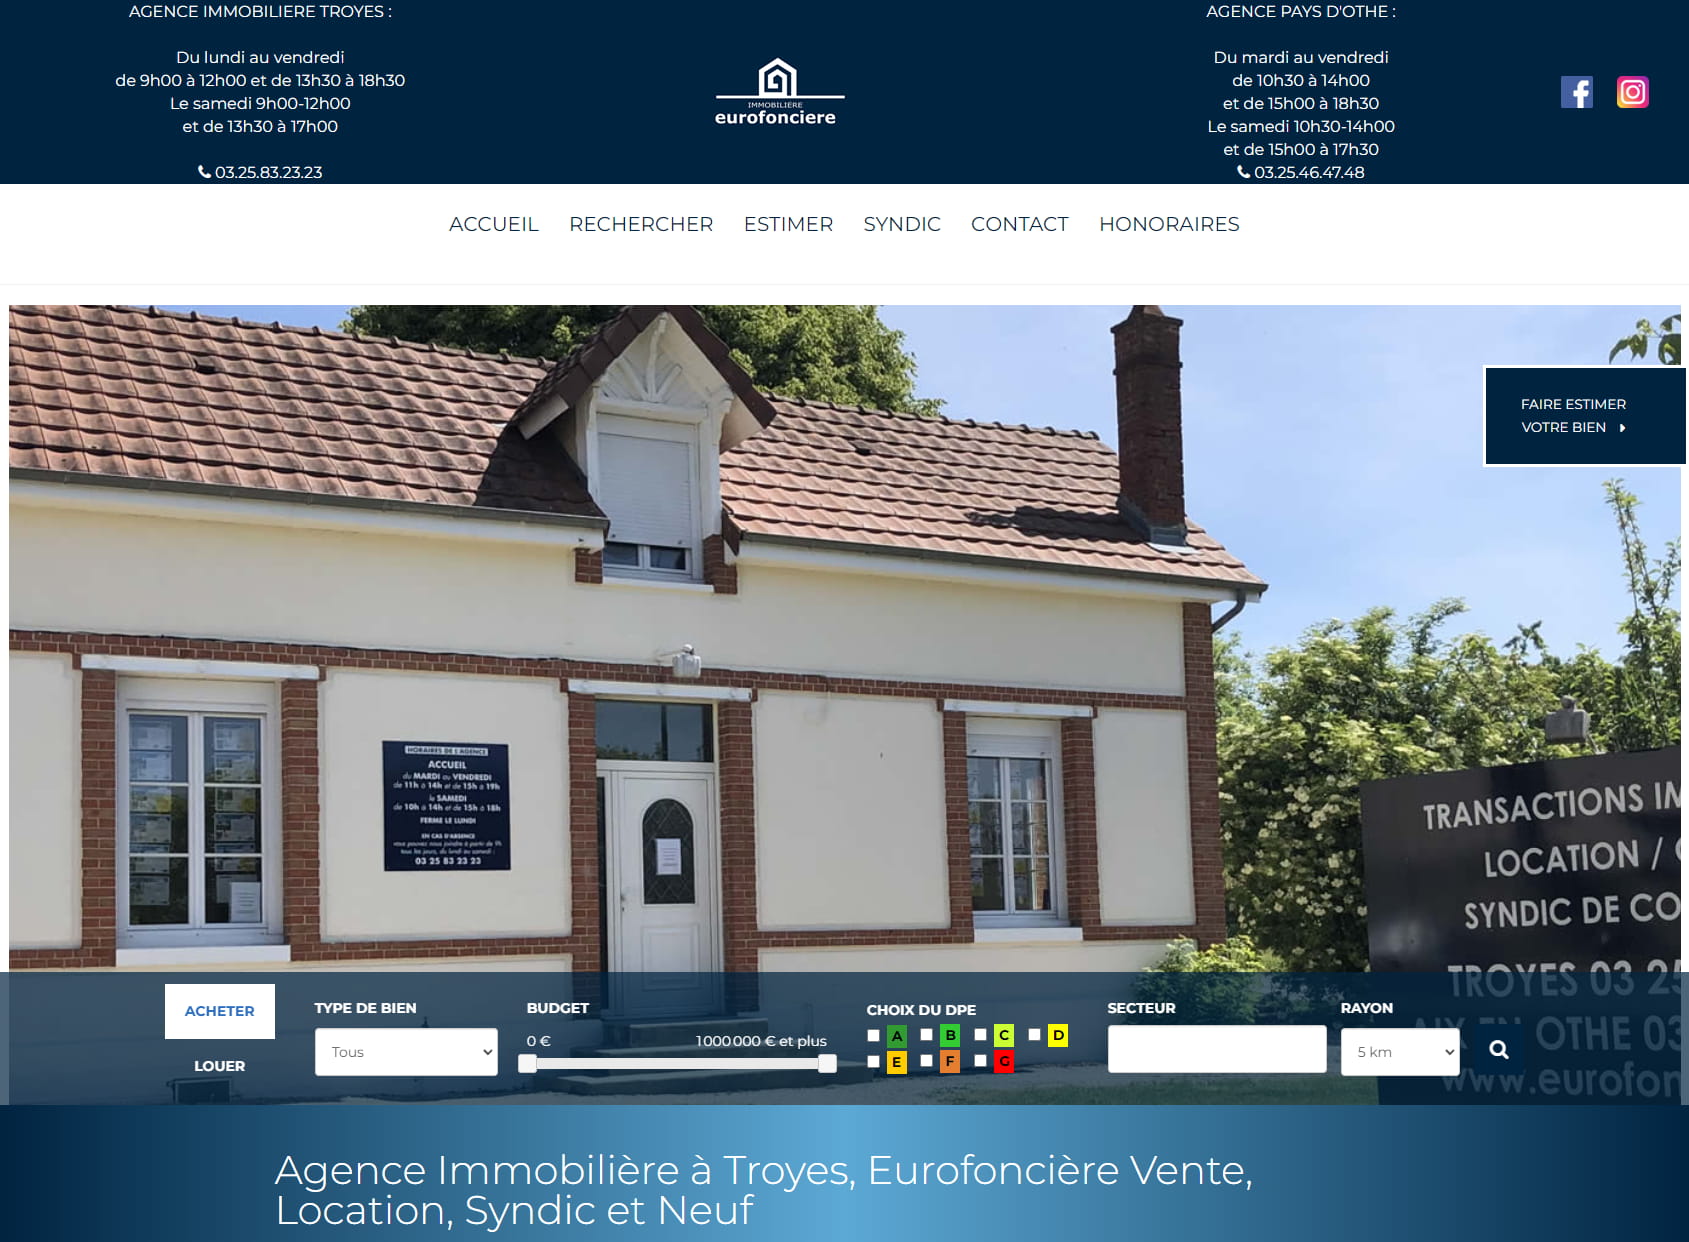 Immobilière Euro Fonciere - Agence immobilière Troyes